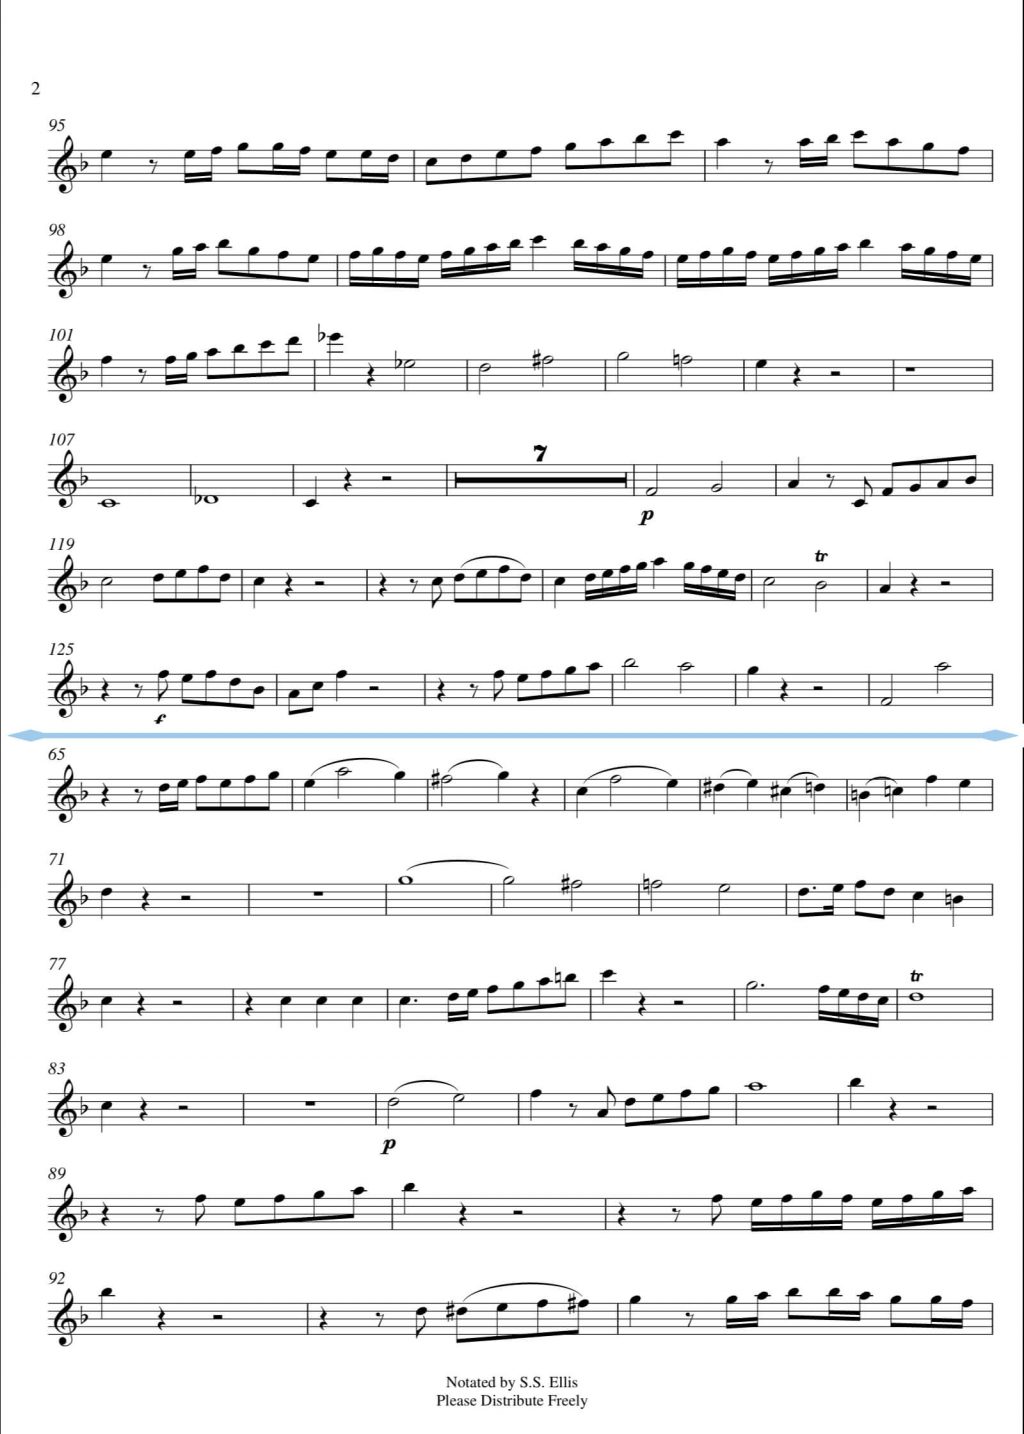 Haydn Trompetenkonzert Seite 2 obere Hälfte